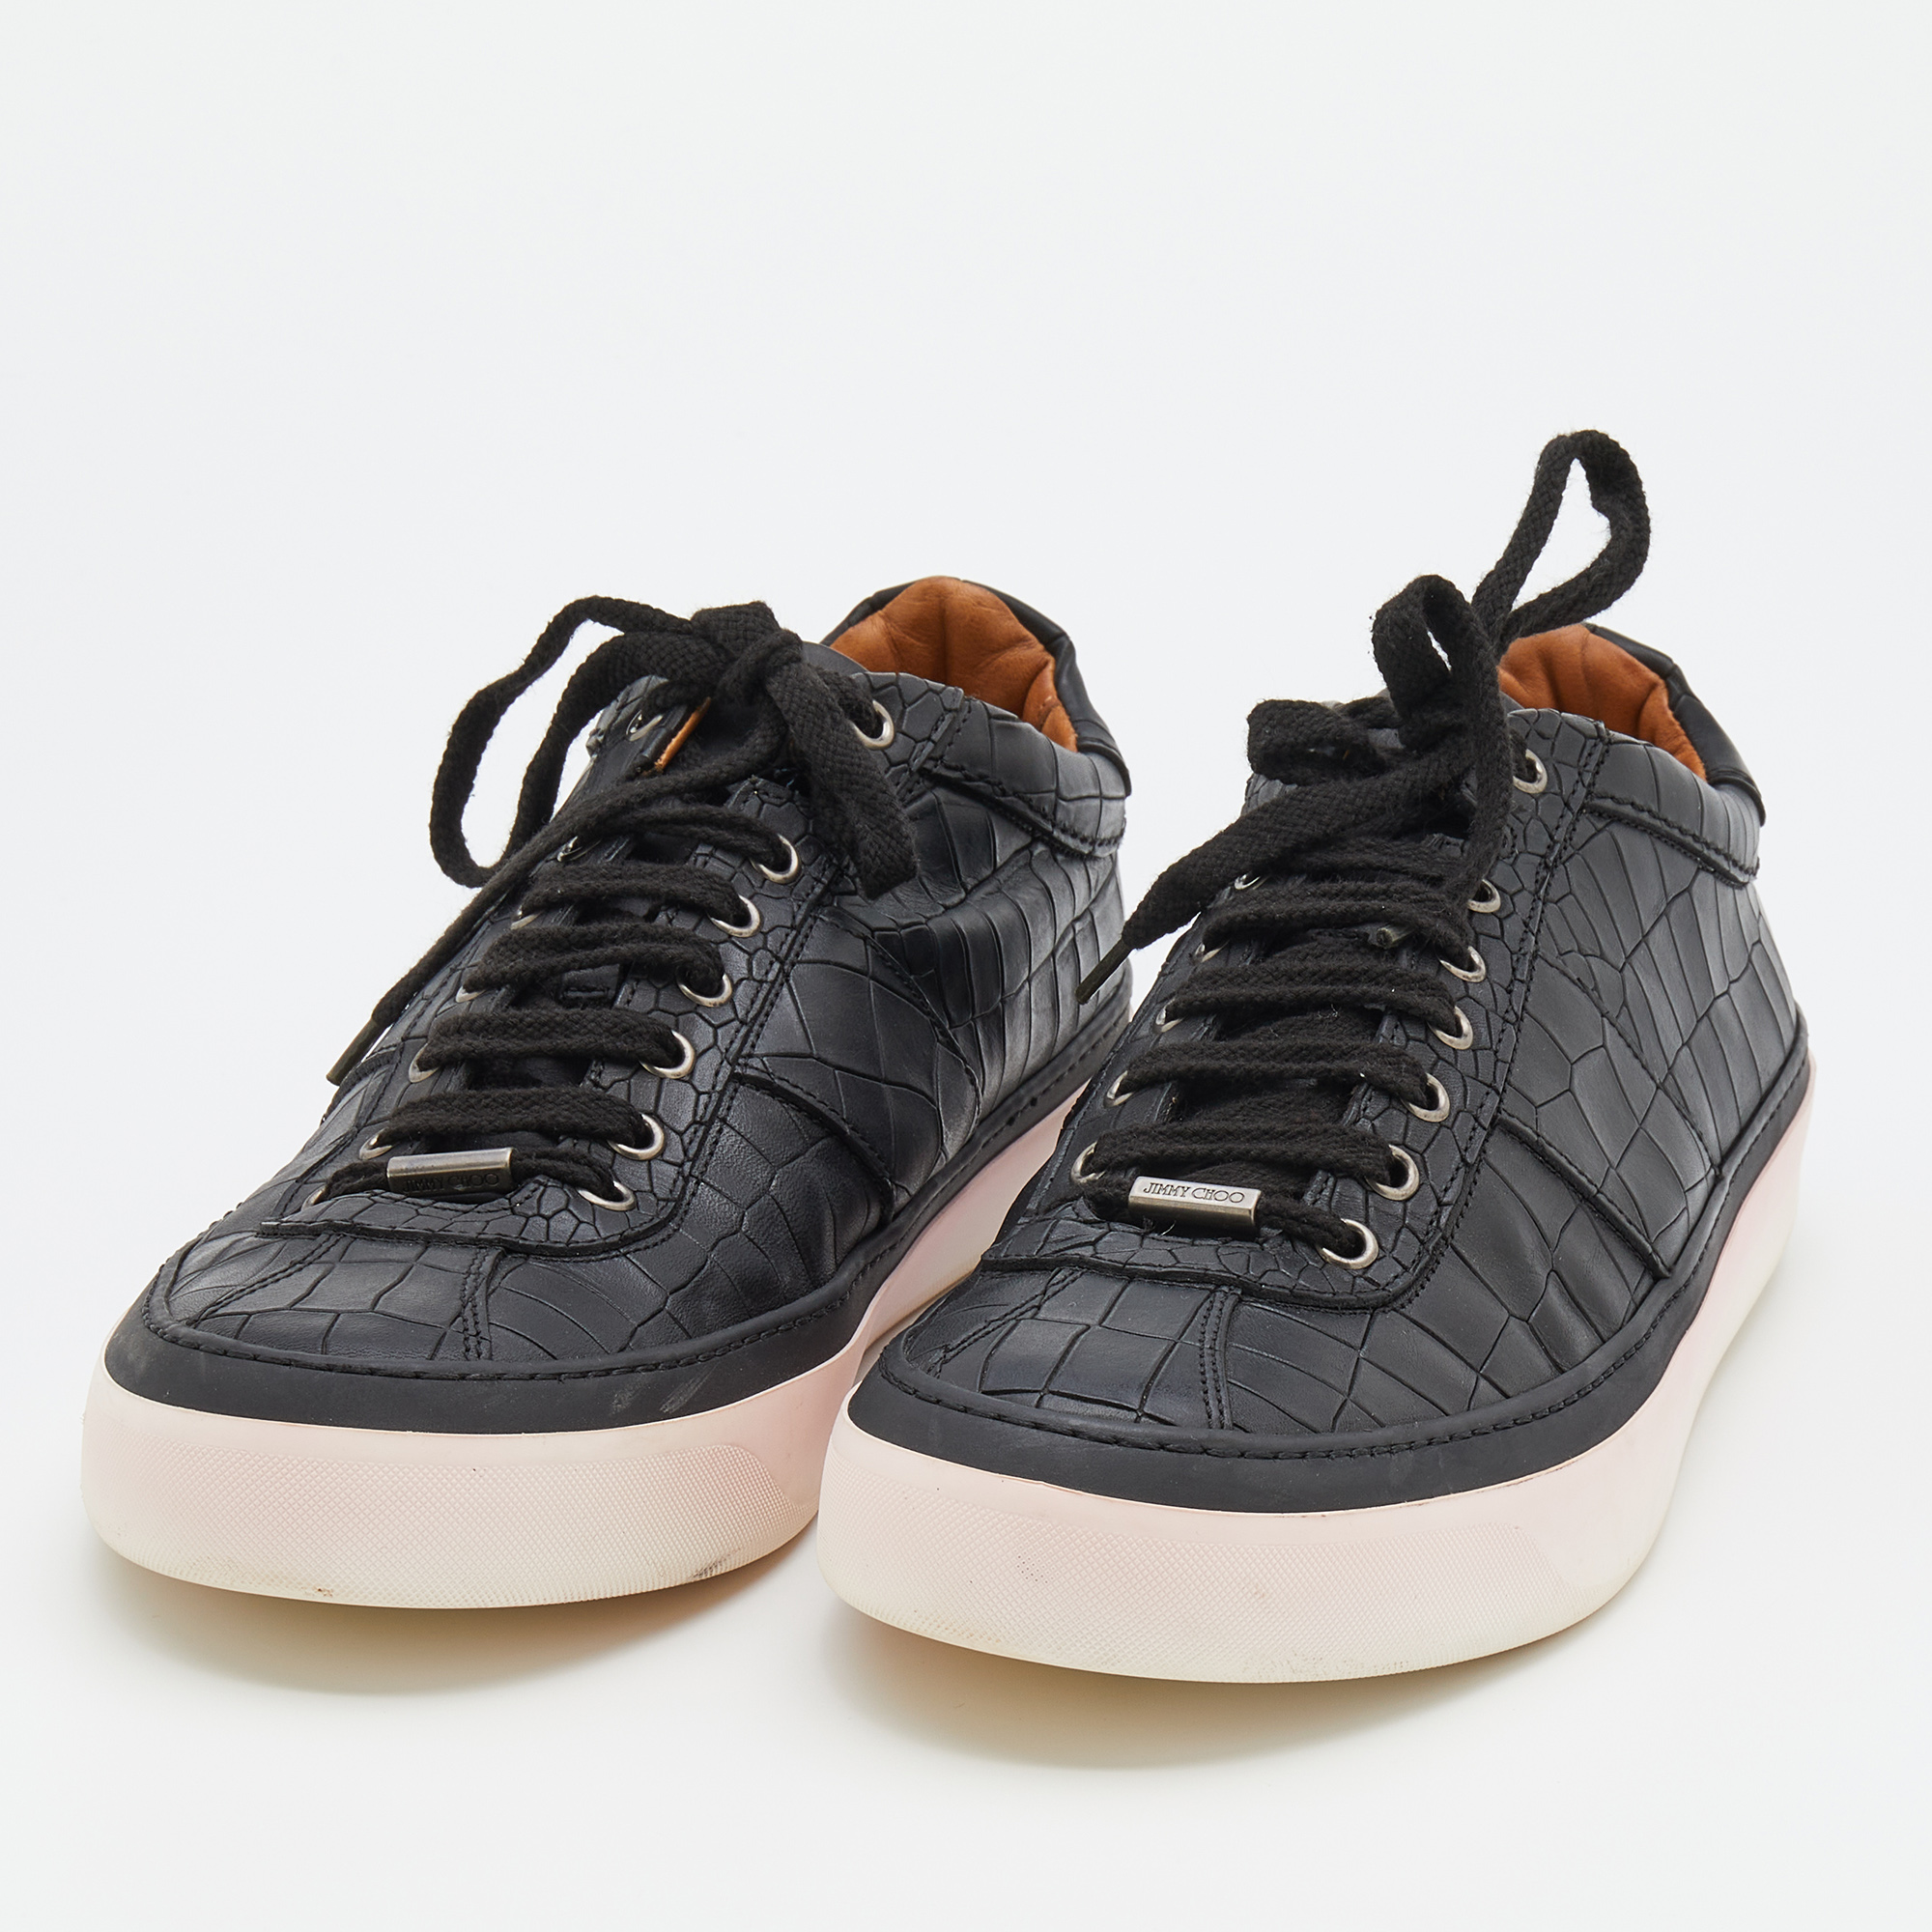 Jimmy Choo Black Croc Embossed Leather Belgravia Low Top Sneakers Size